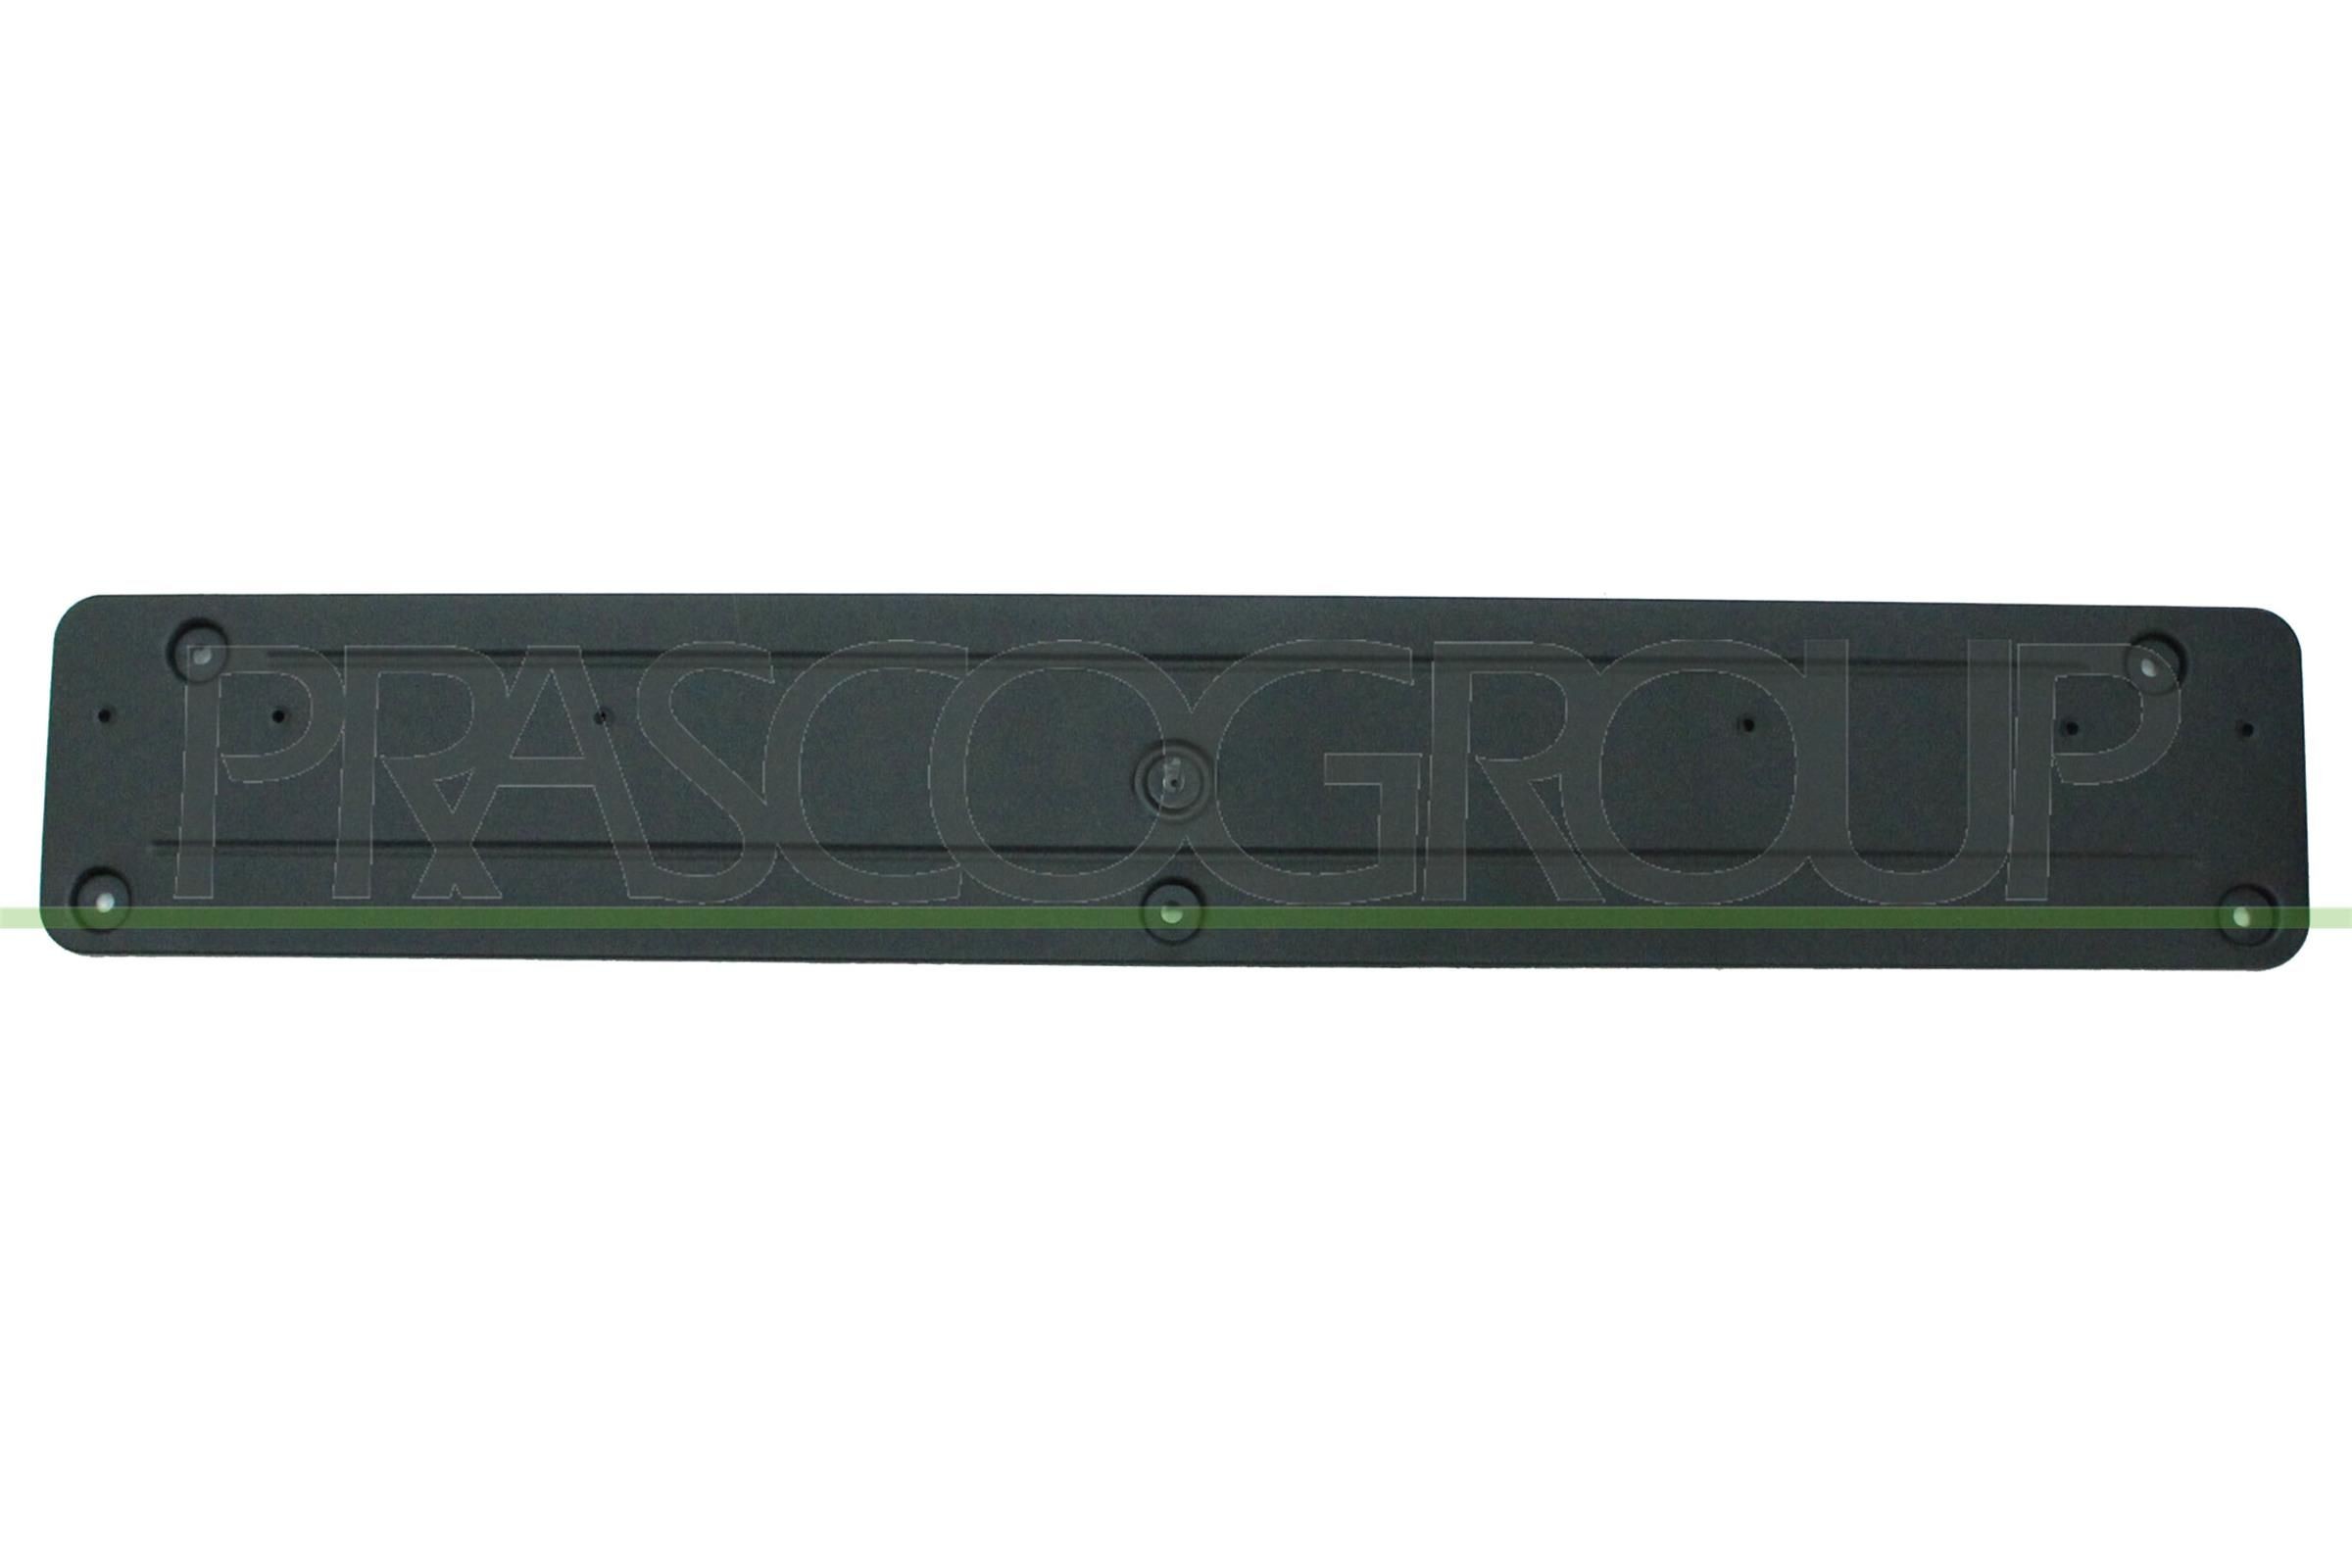 PRASCO Licence plate holder / bracket E46 Coupe new BM7021539